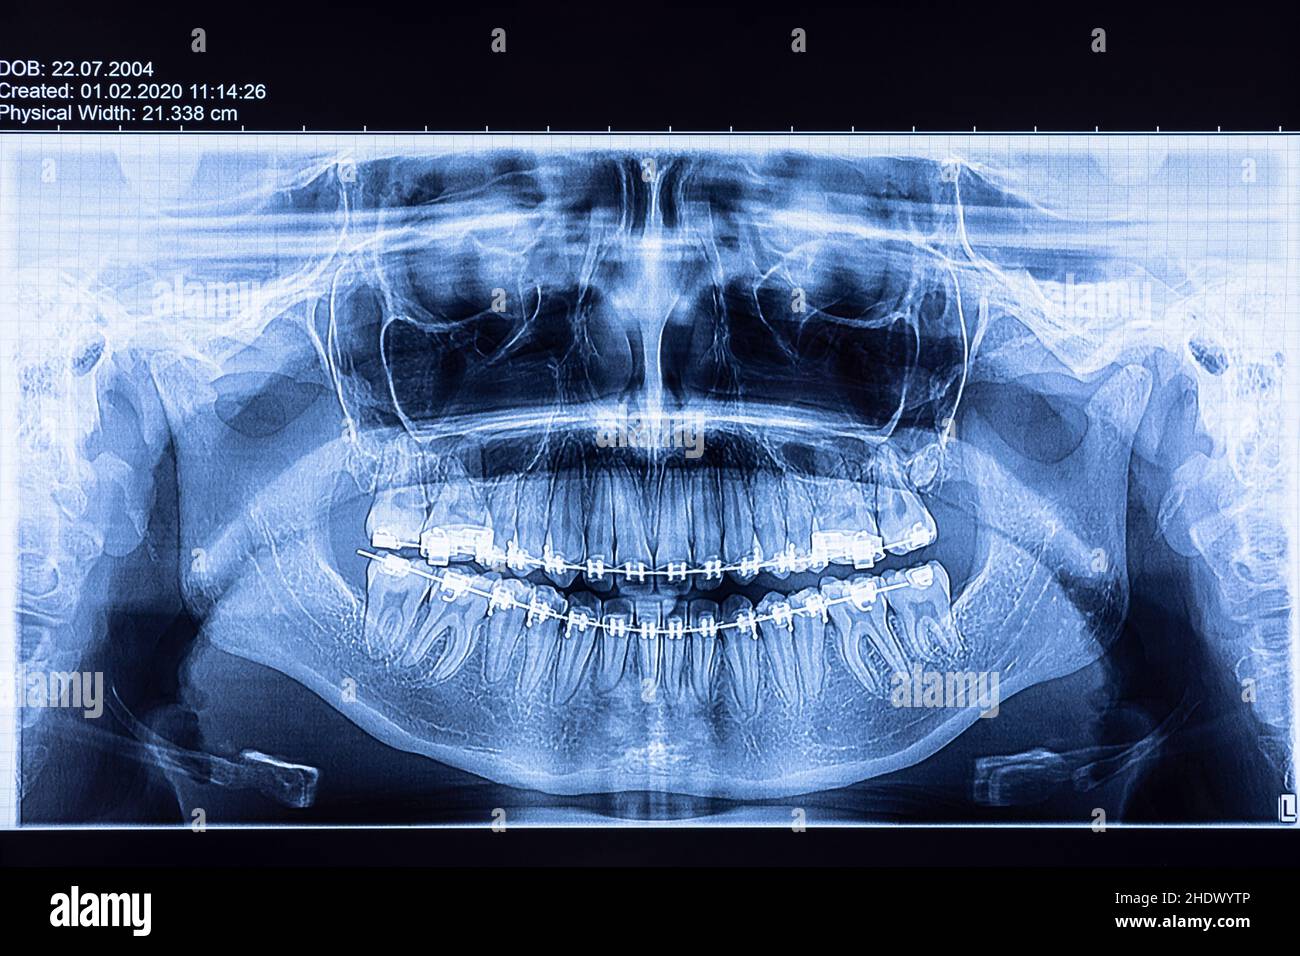 imágenes de rayos x, médicas, radiológicas, radiografías, rayos x, rayos x, medicamentos Foto de stock